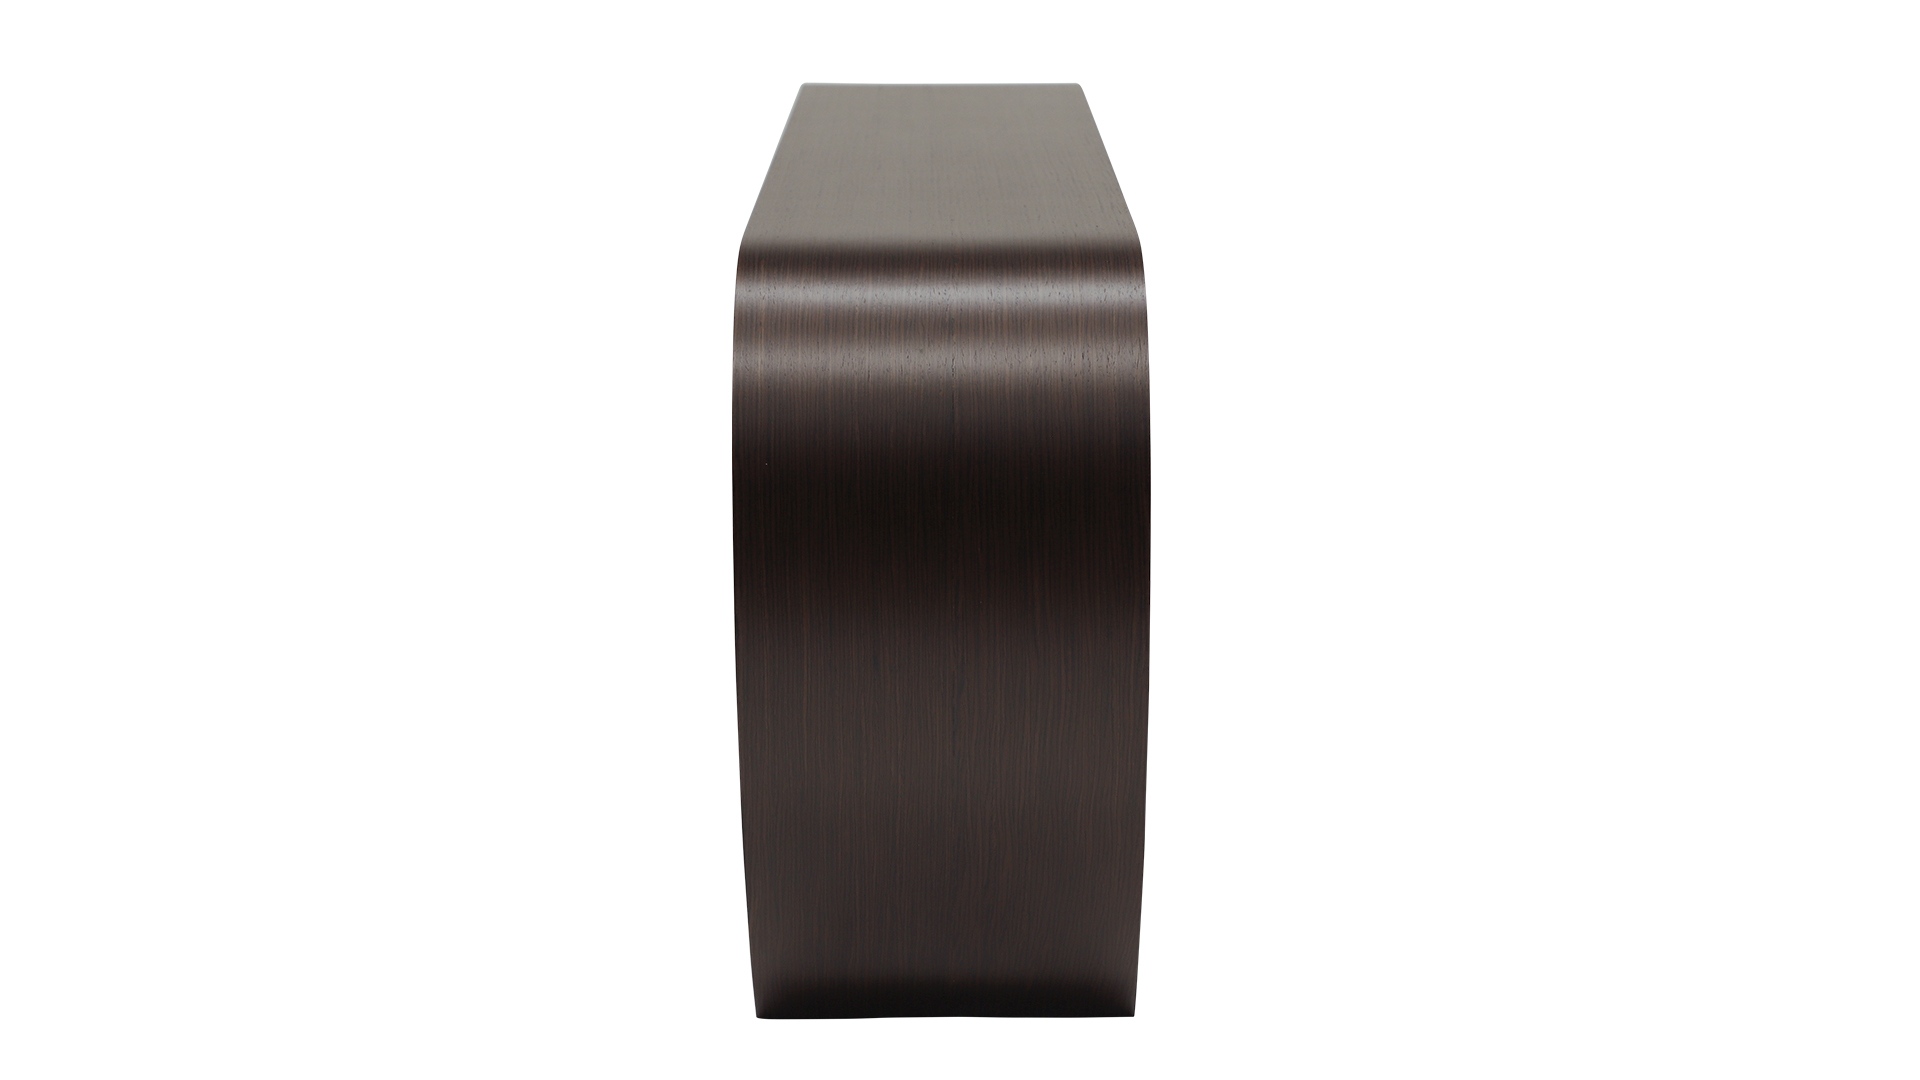 Das Sideboard Sidebow überzeugt mit seiner besonderen Form. Gefertigt wurde das Sideboard aus Echtholzfurnier. Die Farbe ist Wenge. Es ist ein Produkt der Marke Jan Kurtz und hat eine Breite von 123 cm.